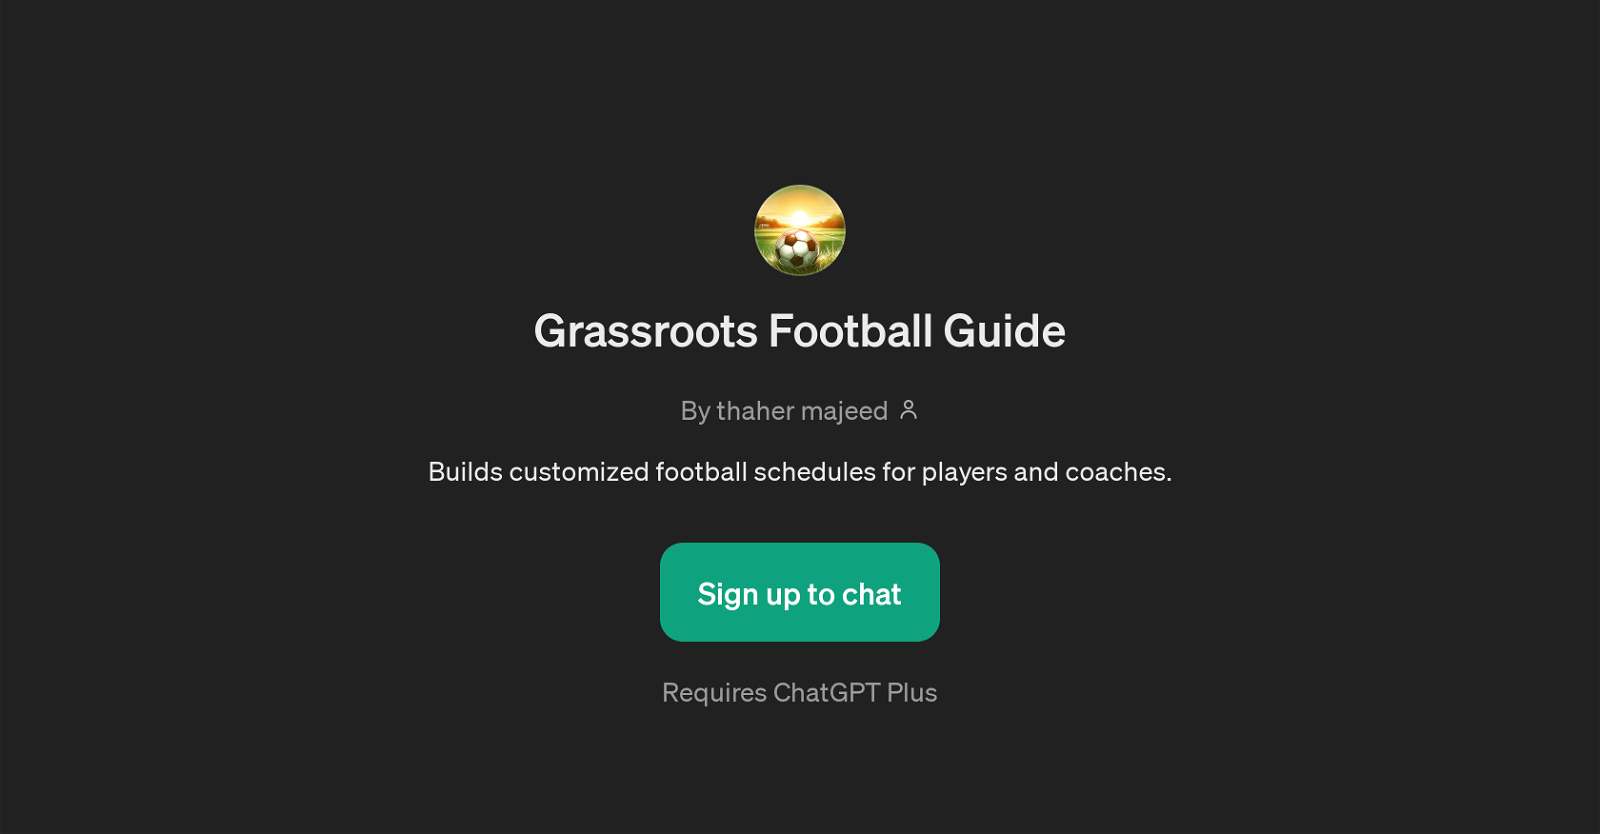 Grassroots Football Guide website